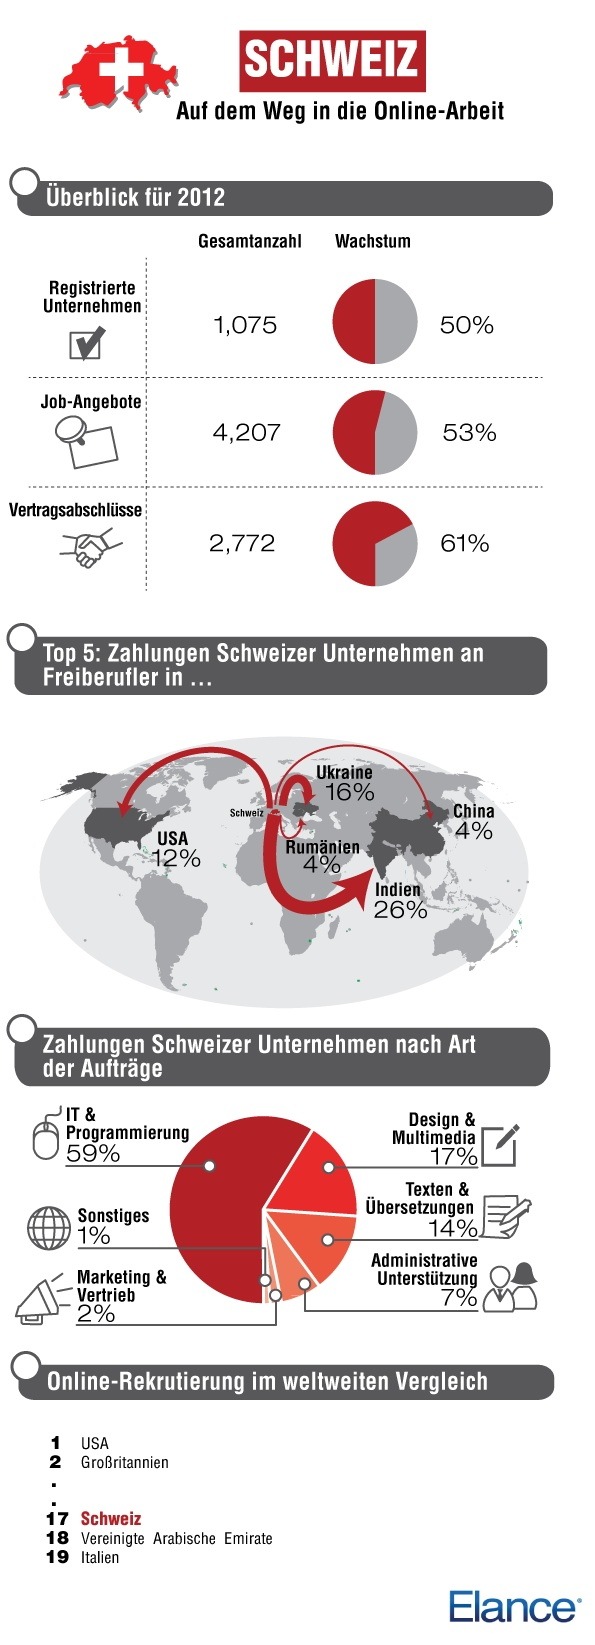 Elance zieht für 2012 Bilanz: Immer mehr Unternehmen suchen online nach Fachkräften / 50% mehr Schweizer Firmen nutzen Elance / Fachkräfte aus IT &amp; Programmierung am häufigsten nachgefragt